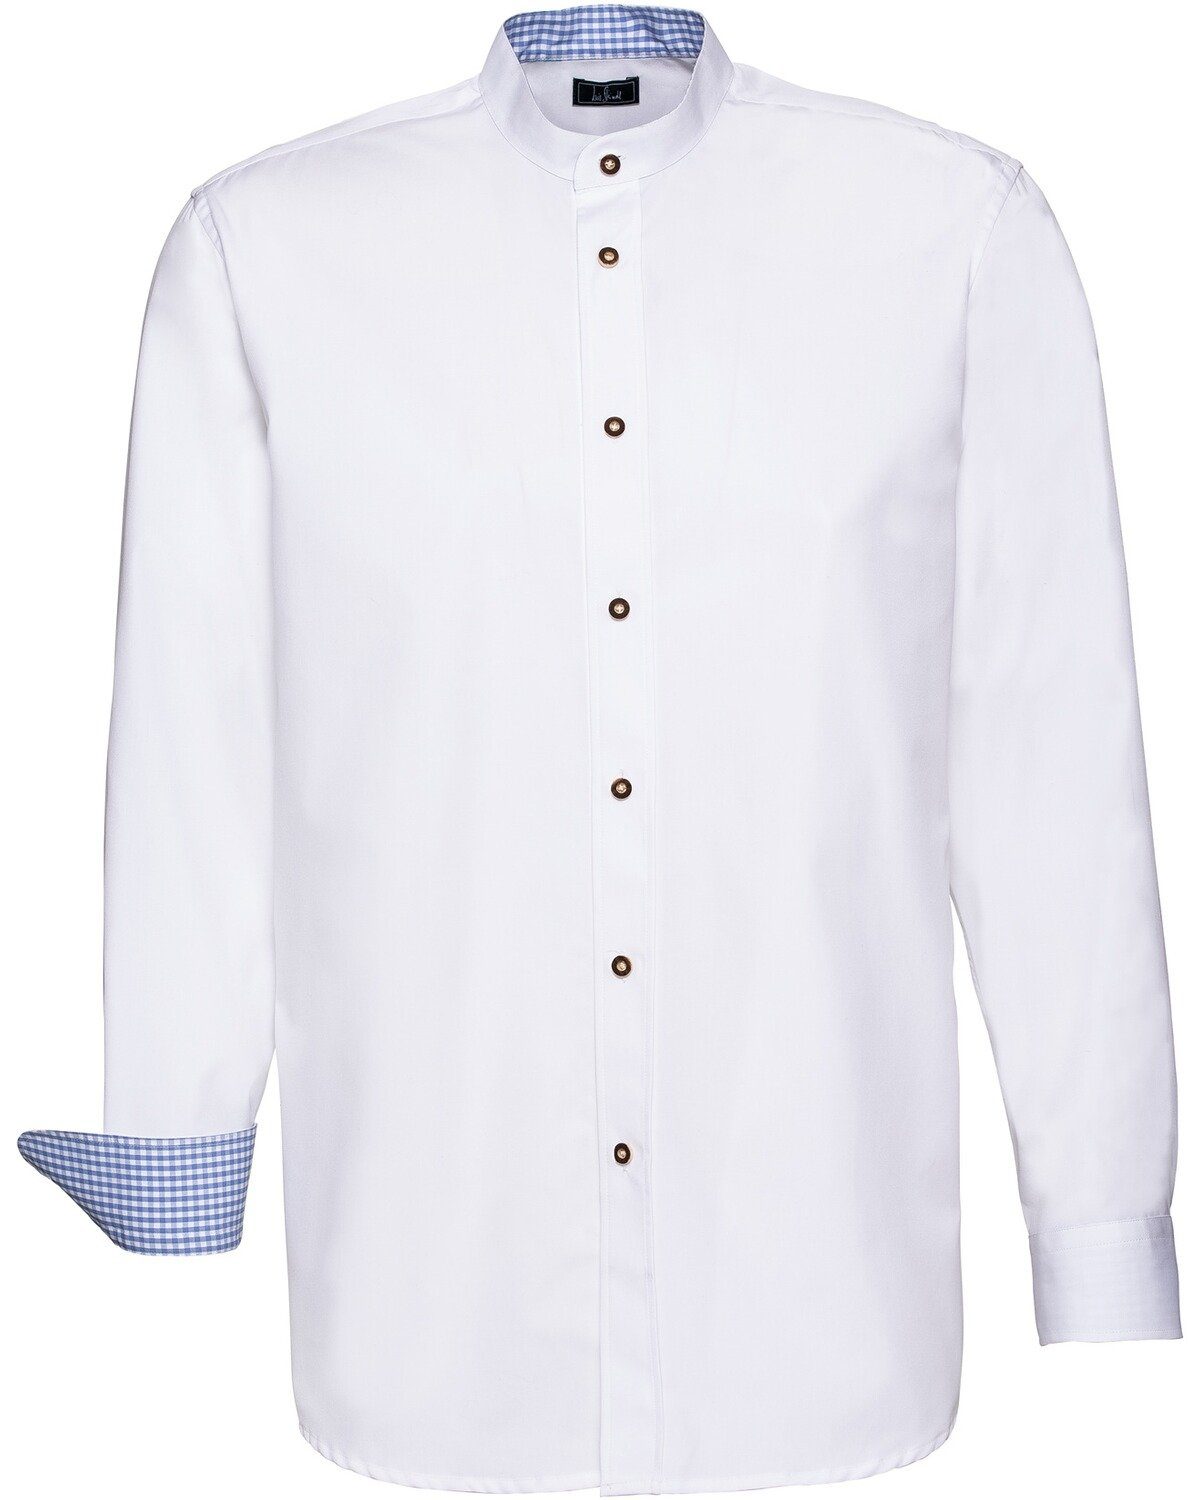 Luis Steindl Trachtenhemd Stehkragenhemd